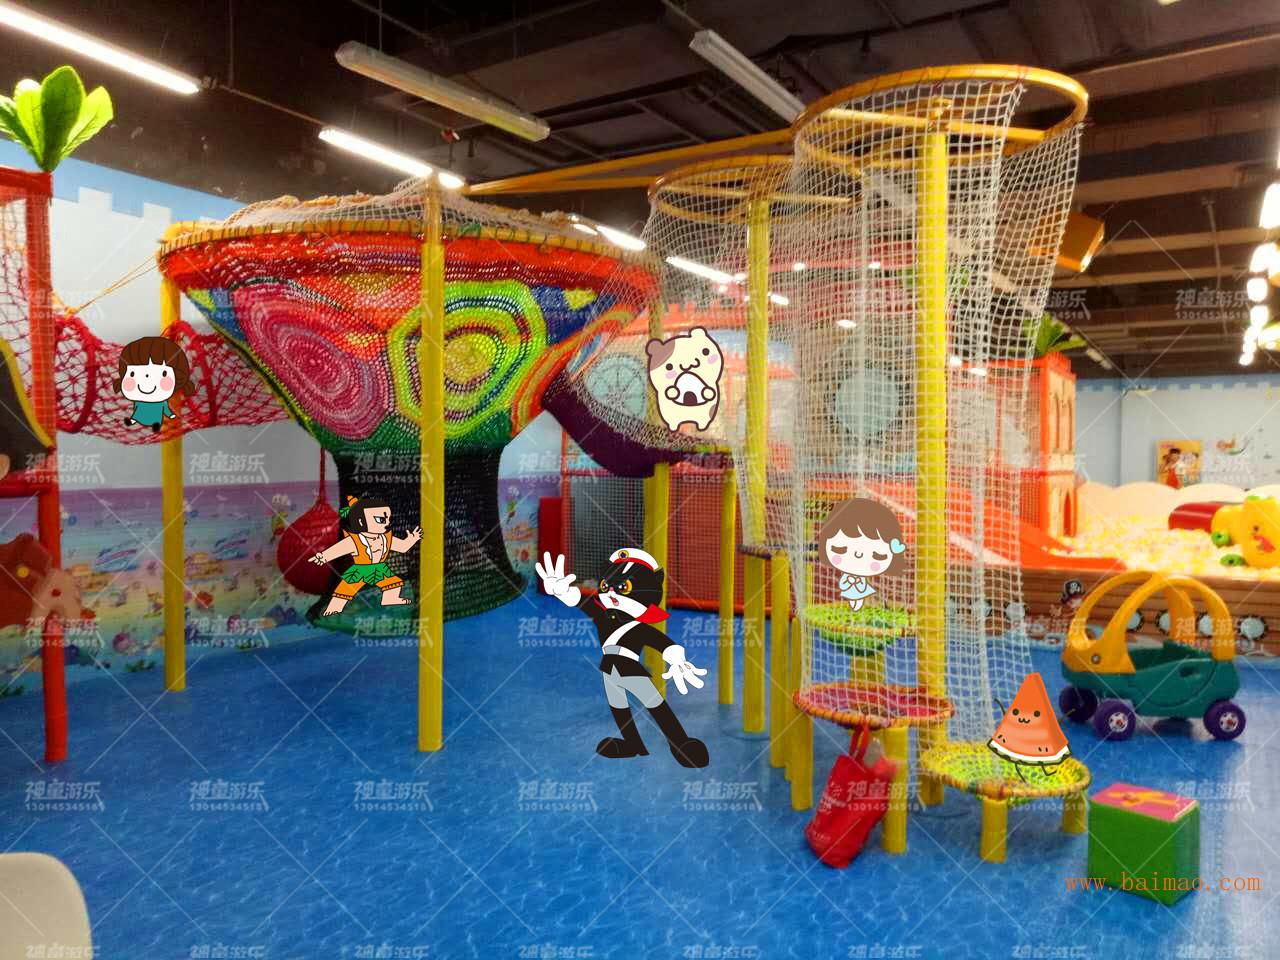 郑州市神童游乐设备有限公司销售部批发供应儿童游乐场设备,电玩城